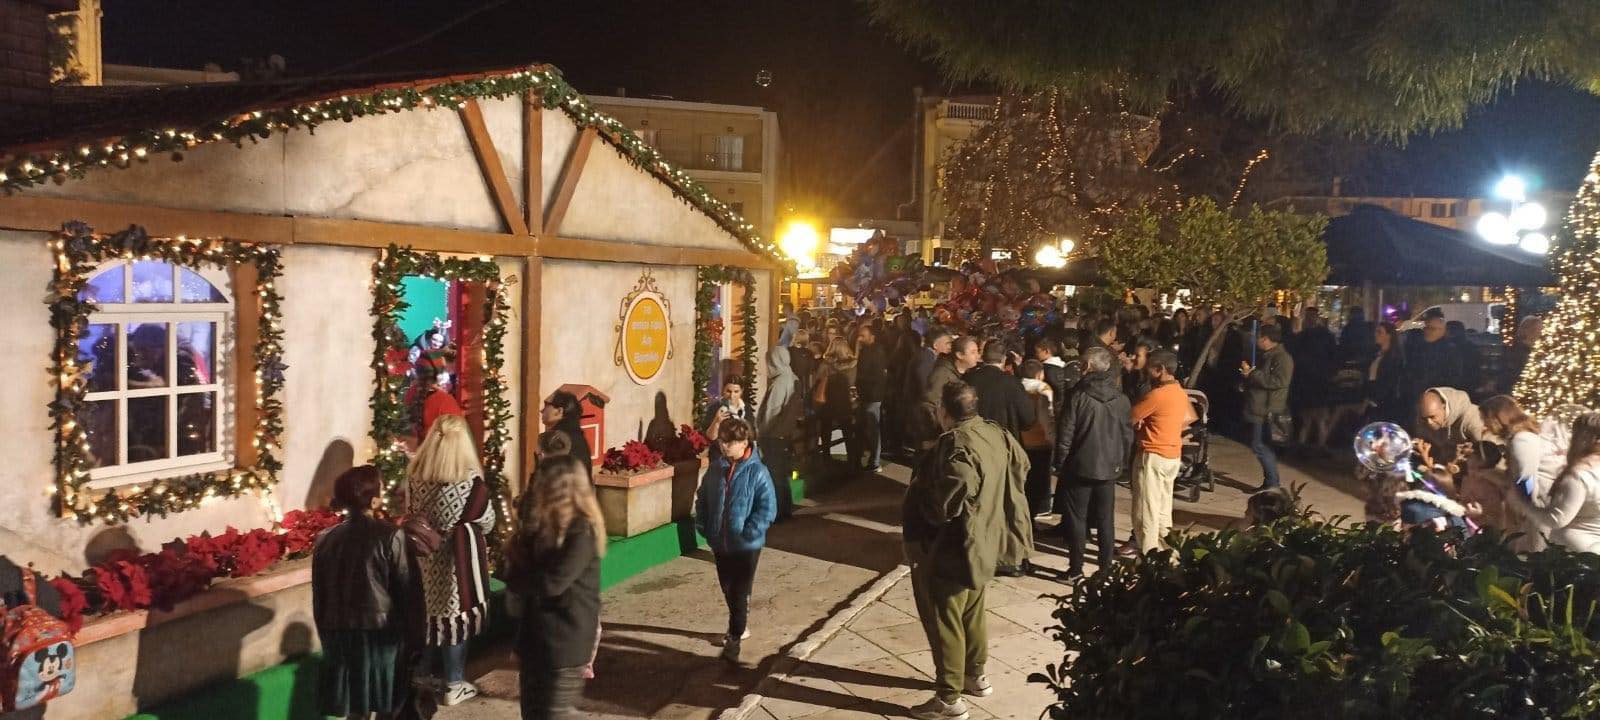 Σε εορταστικούς ρυθμούς ο Δήμος Παιανίας - Ανάβει σήμερα και το Χριστουγεννιάτικο δέντρο στα Γλυκά Νερά